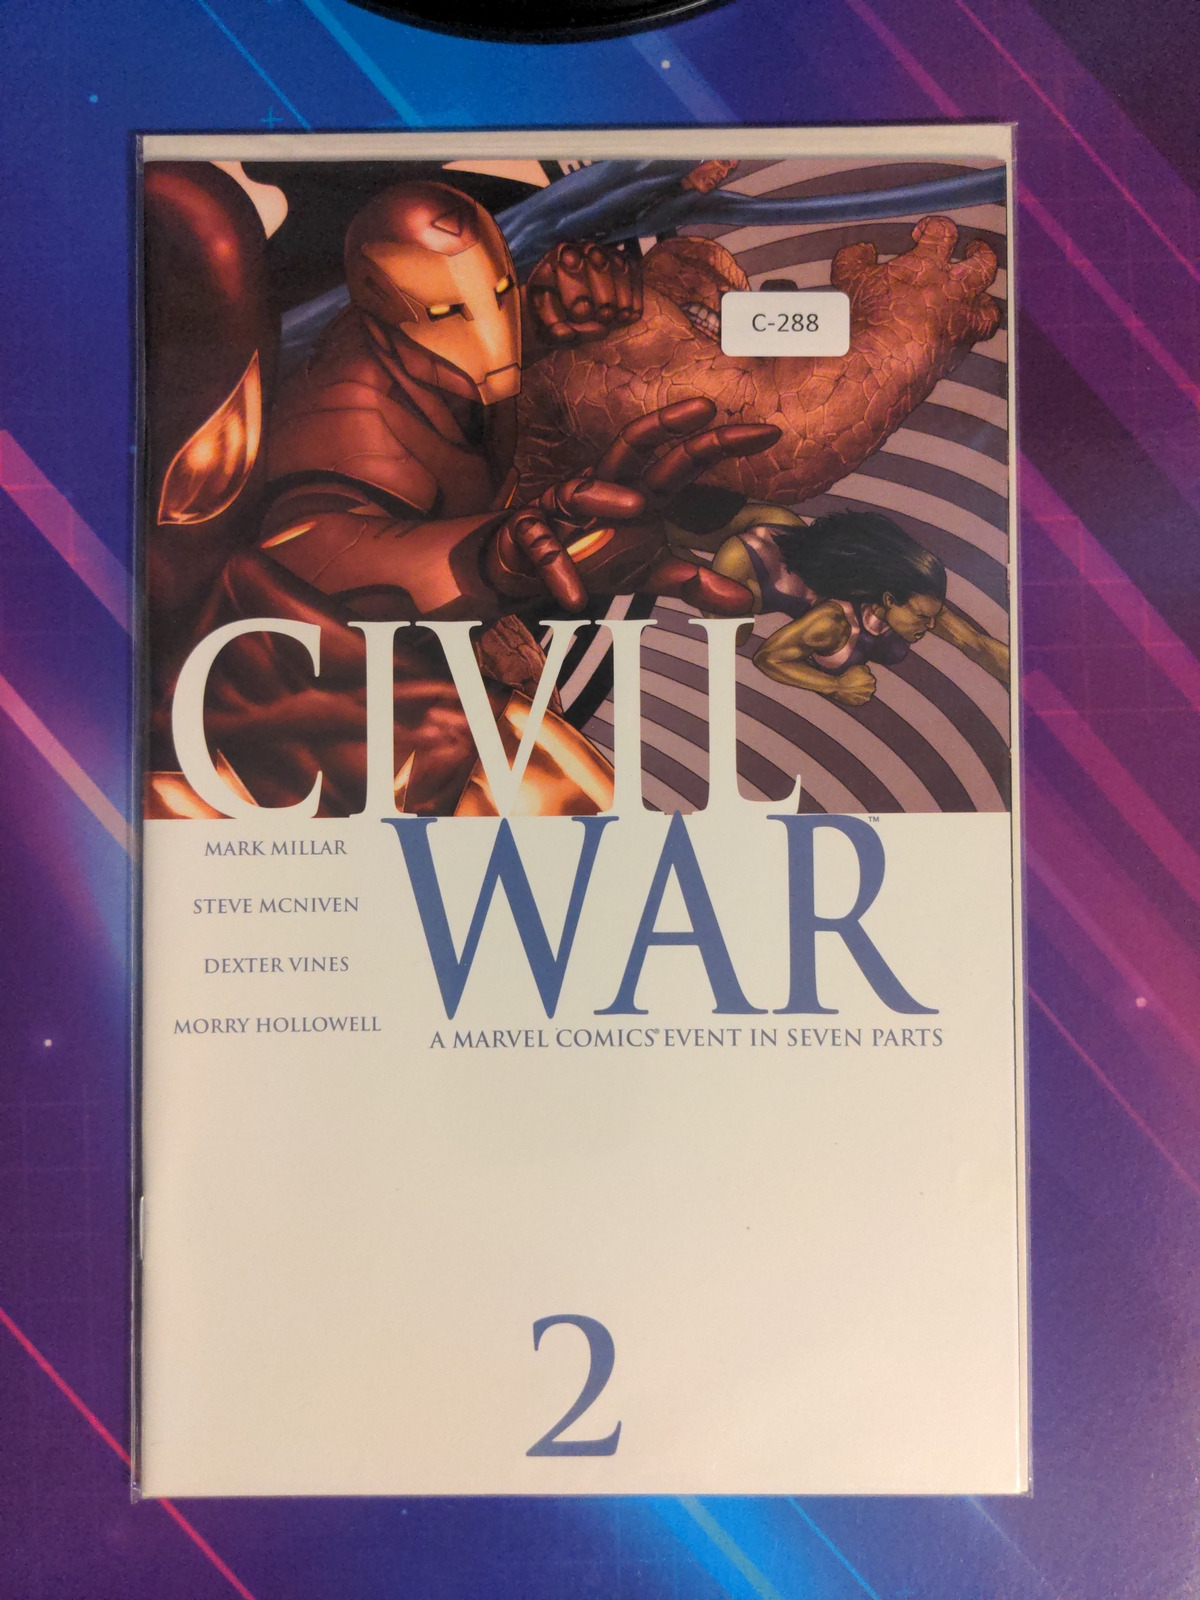 CIVIL WAR #2 VOL. 1 9.0+ MARVEL COMIC BOOK C-288